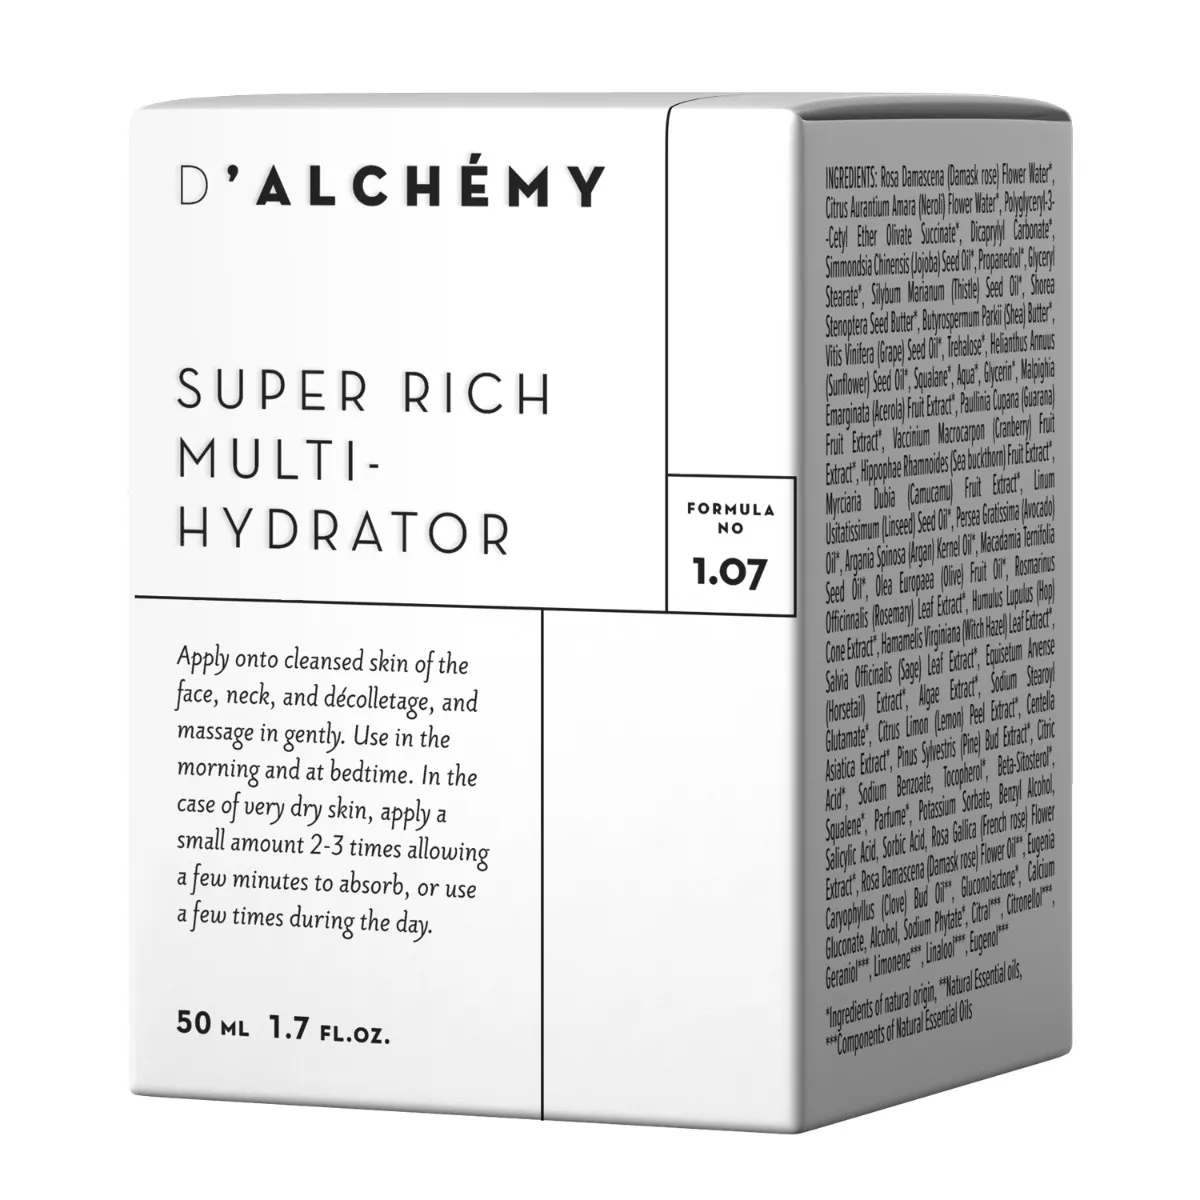 D’Alchemy Super Rich Multi-Hydrator, bogaty krem do cery przewlekle suchej, 50 ml